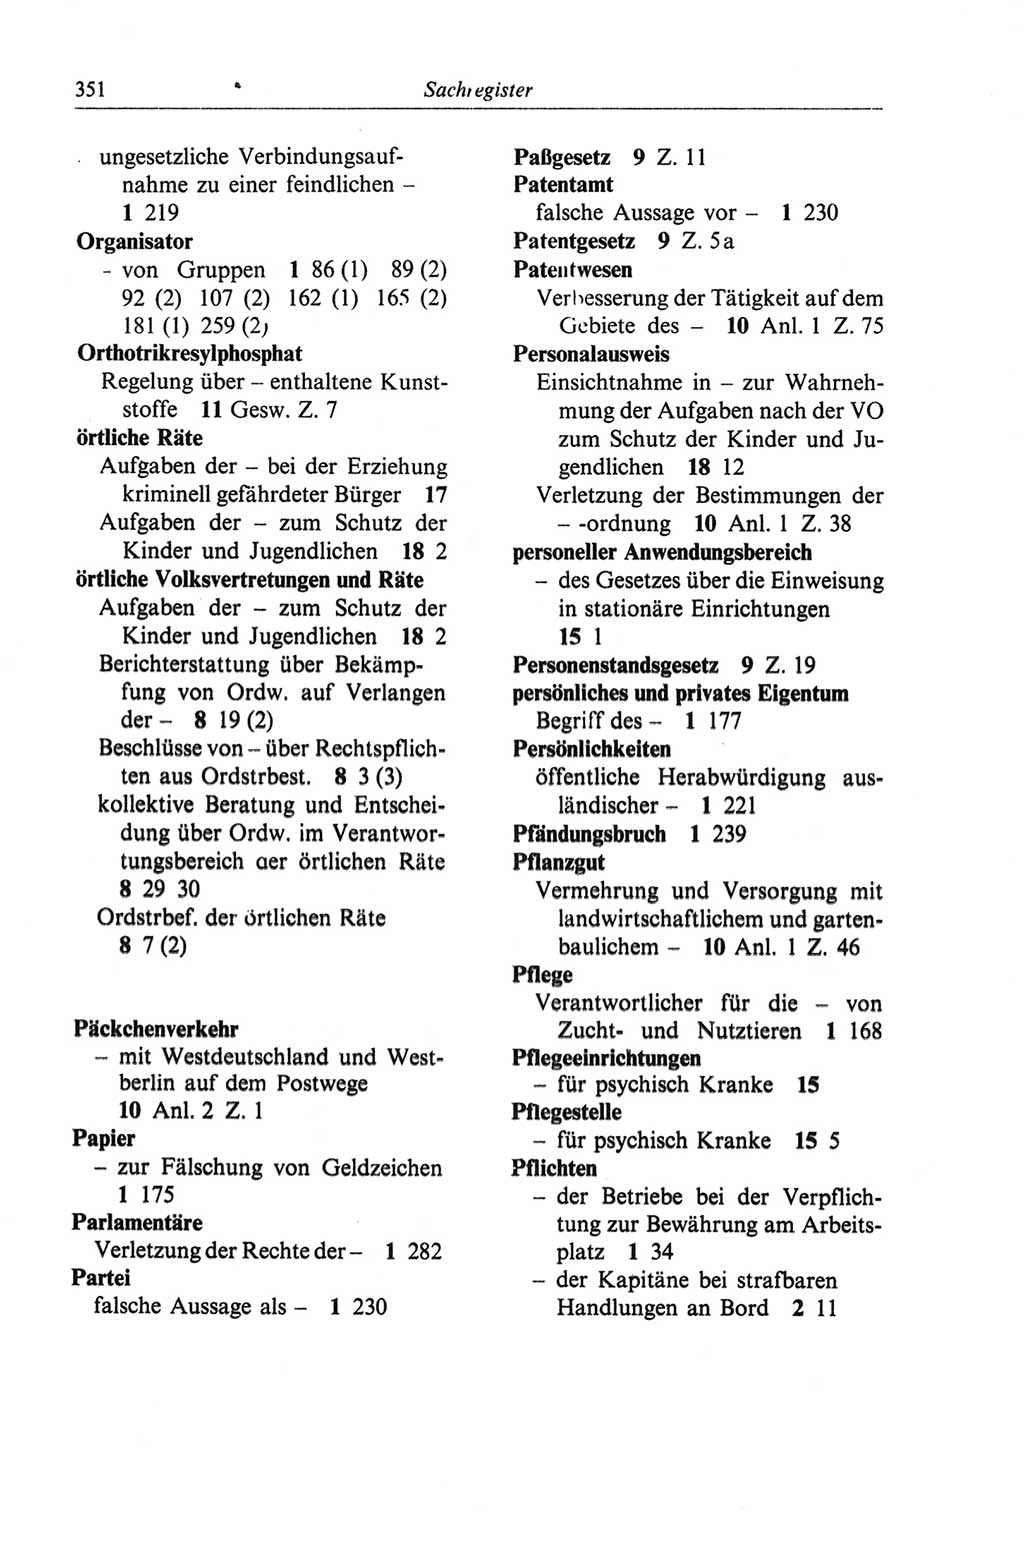 Strafgesetzbuch (StGB) der Deutschen Demokratischen Republik (DDR) und angrenzende Gesetze und Bestimmungen 1968, Seite 351 (StGB Ges. Best. DDR 1968, S. 351)